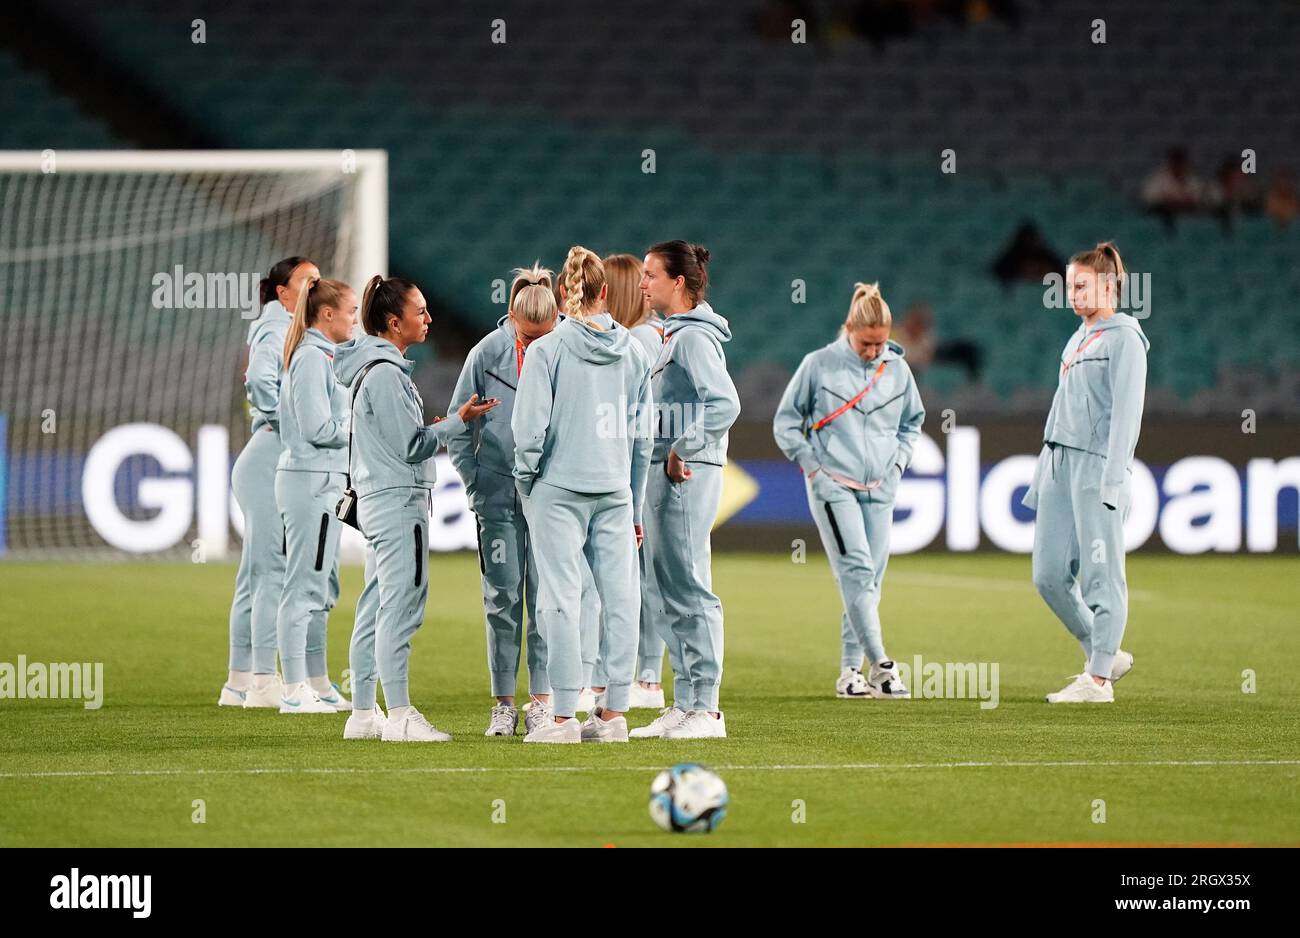 Englische Spieler besichtigen das Spielfeld vor dem Viertelfinale der FIFA Women's World Cup im Stadium Australia, Sydney. Foto: Samstag, 12. August 2023. Stockfoto